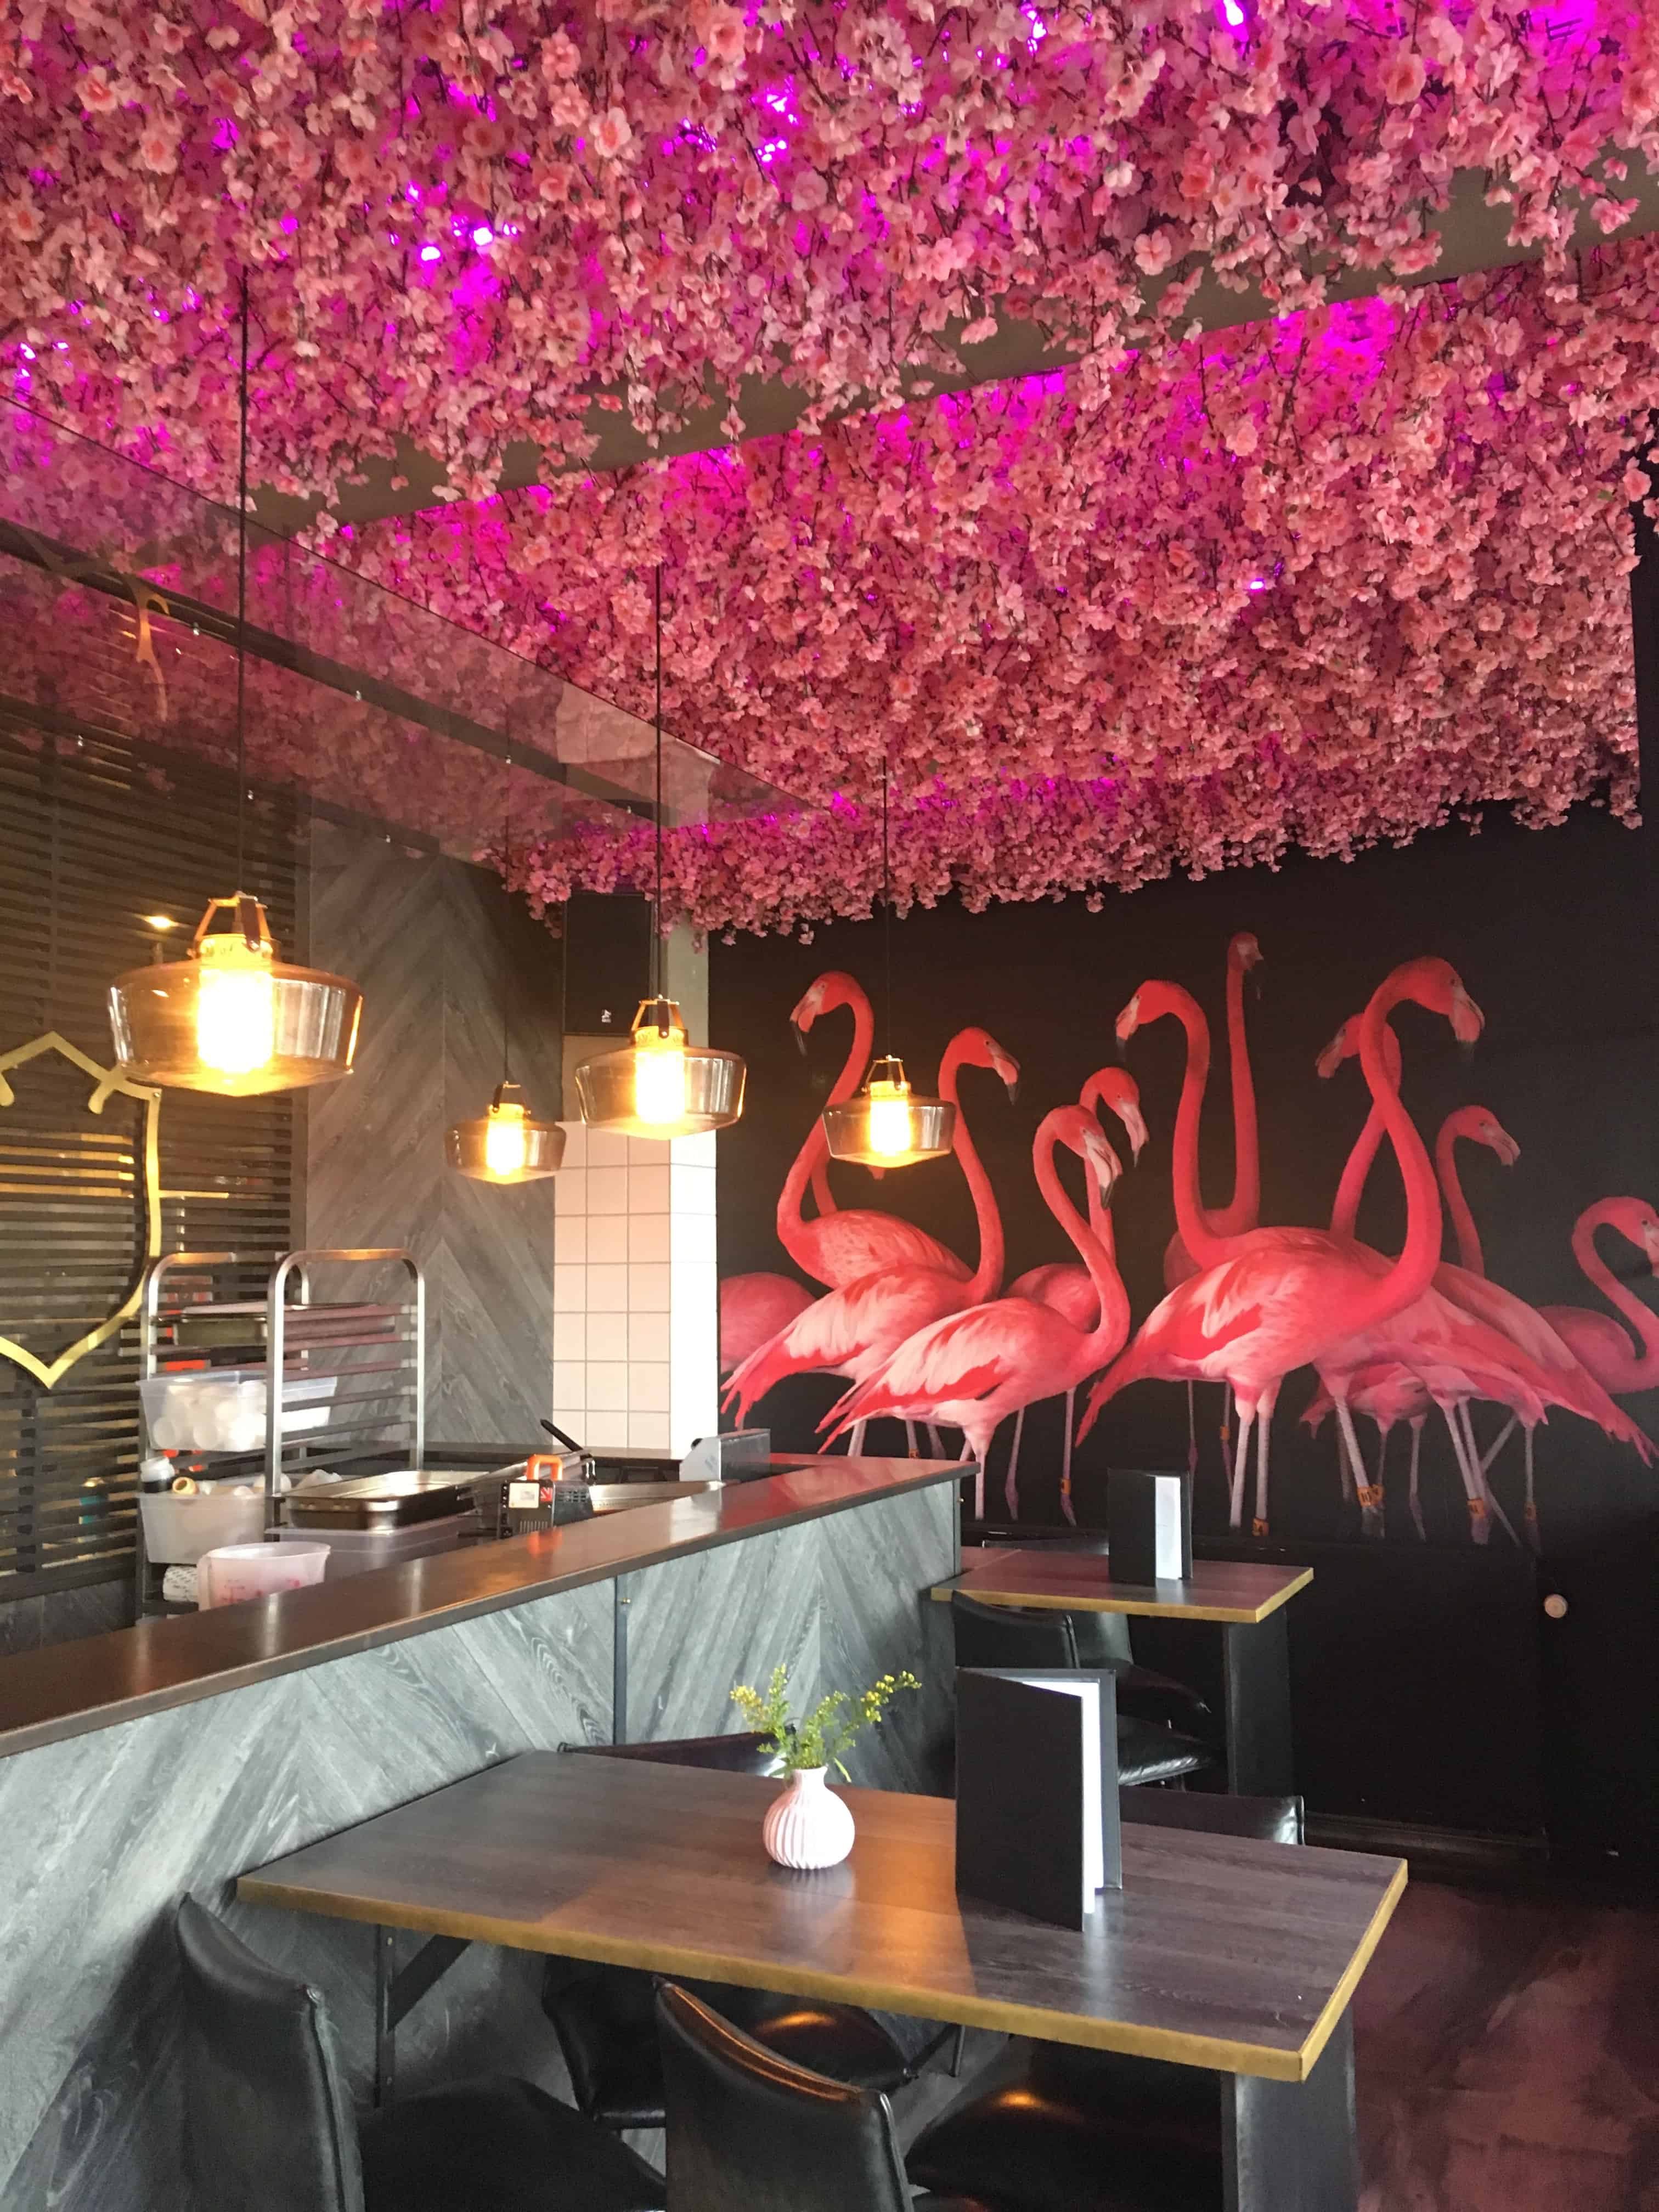 Noho er meget bloggervenlig med lyserøde flamingoer og blomster i loftet